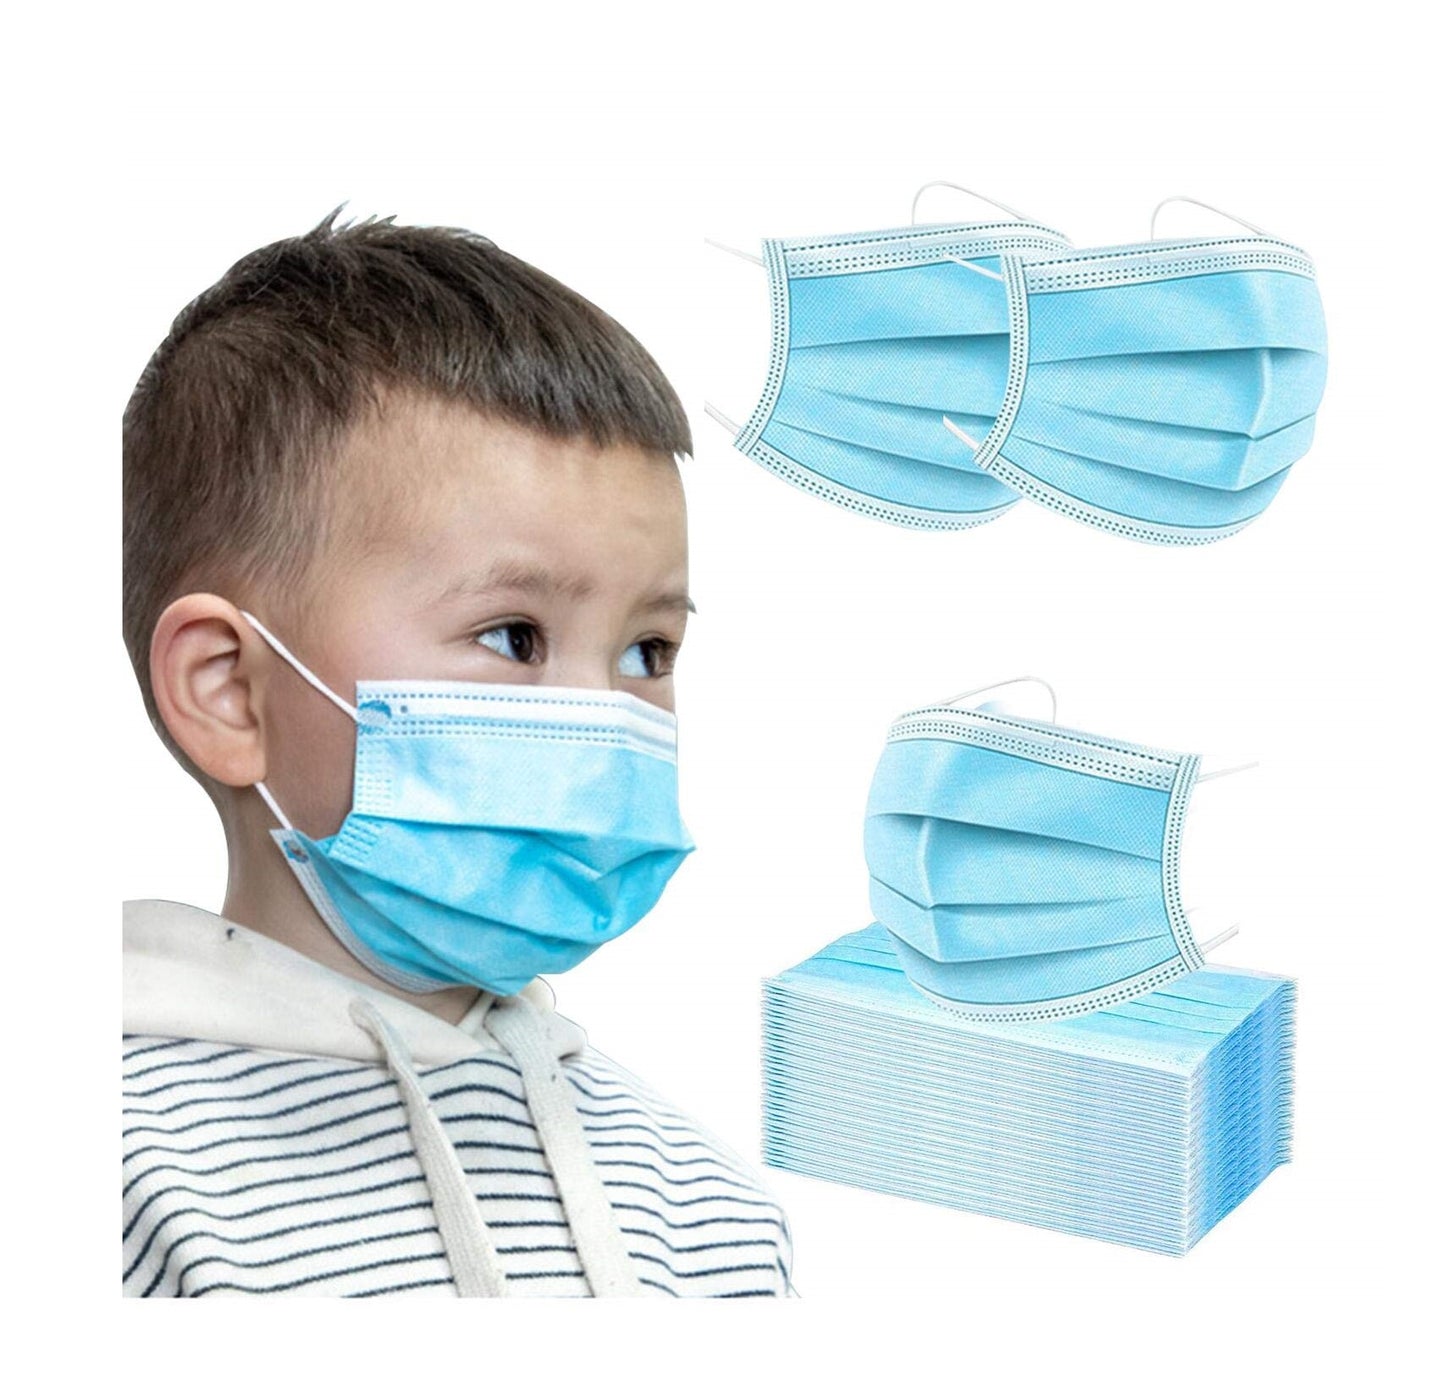 Kids Blue Mask - 50pcs / Box (Individually Wrapped)